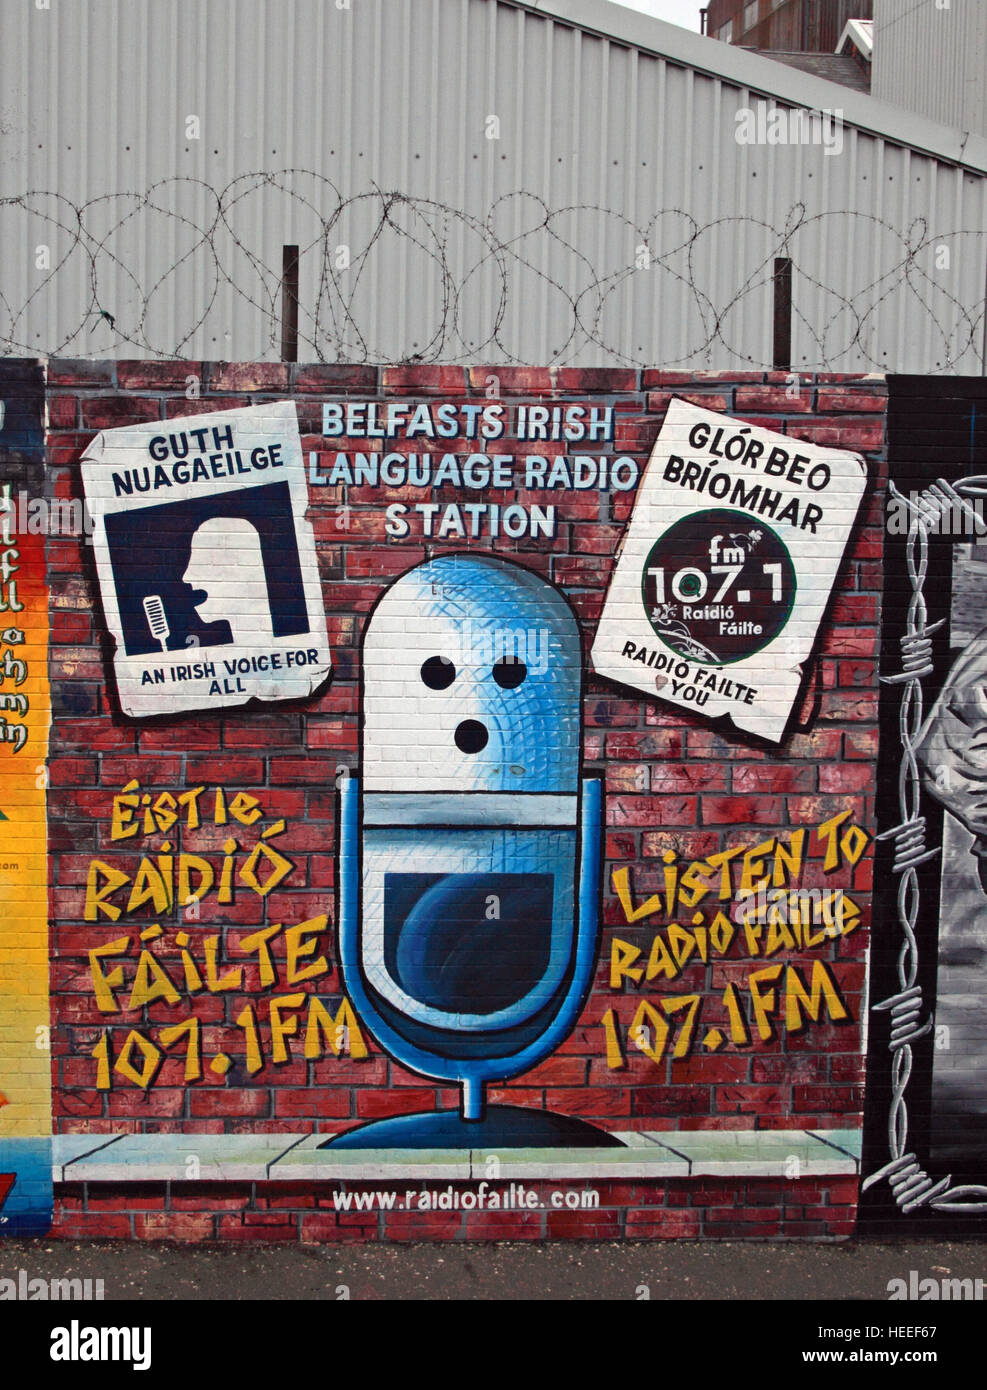 Belfast Falls Rd - radio murale républicaine Guth Nuagaeil,voix irlandais pour tous les Radio Failte Banque D'Images